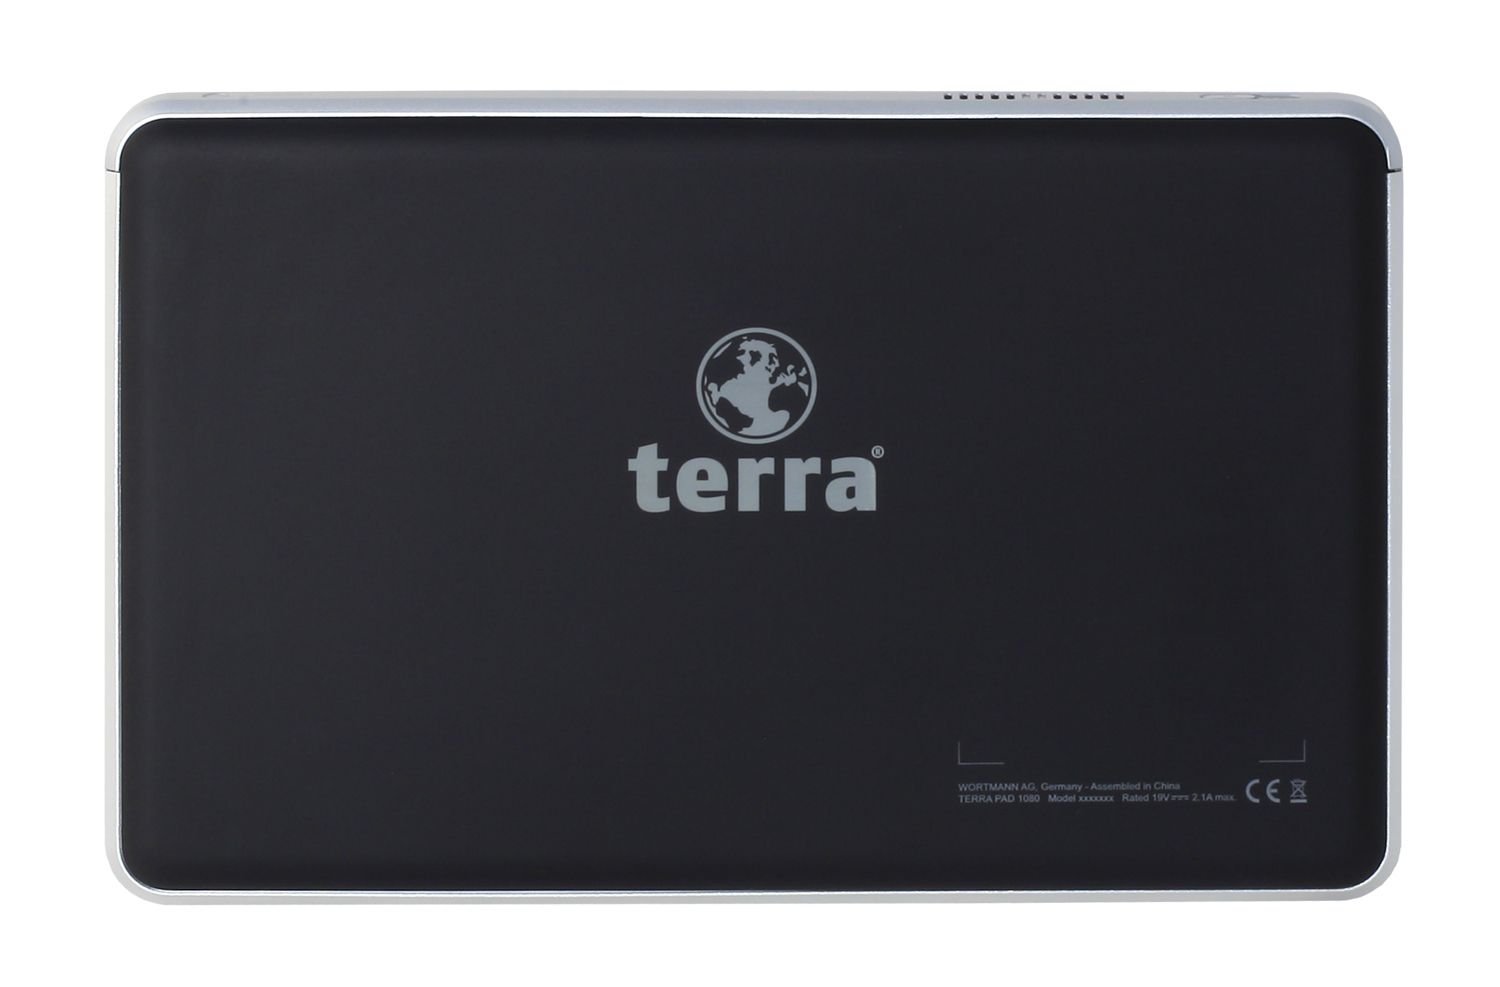 Terra Mobile Pad 1080 2